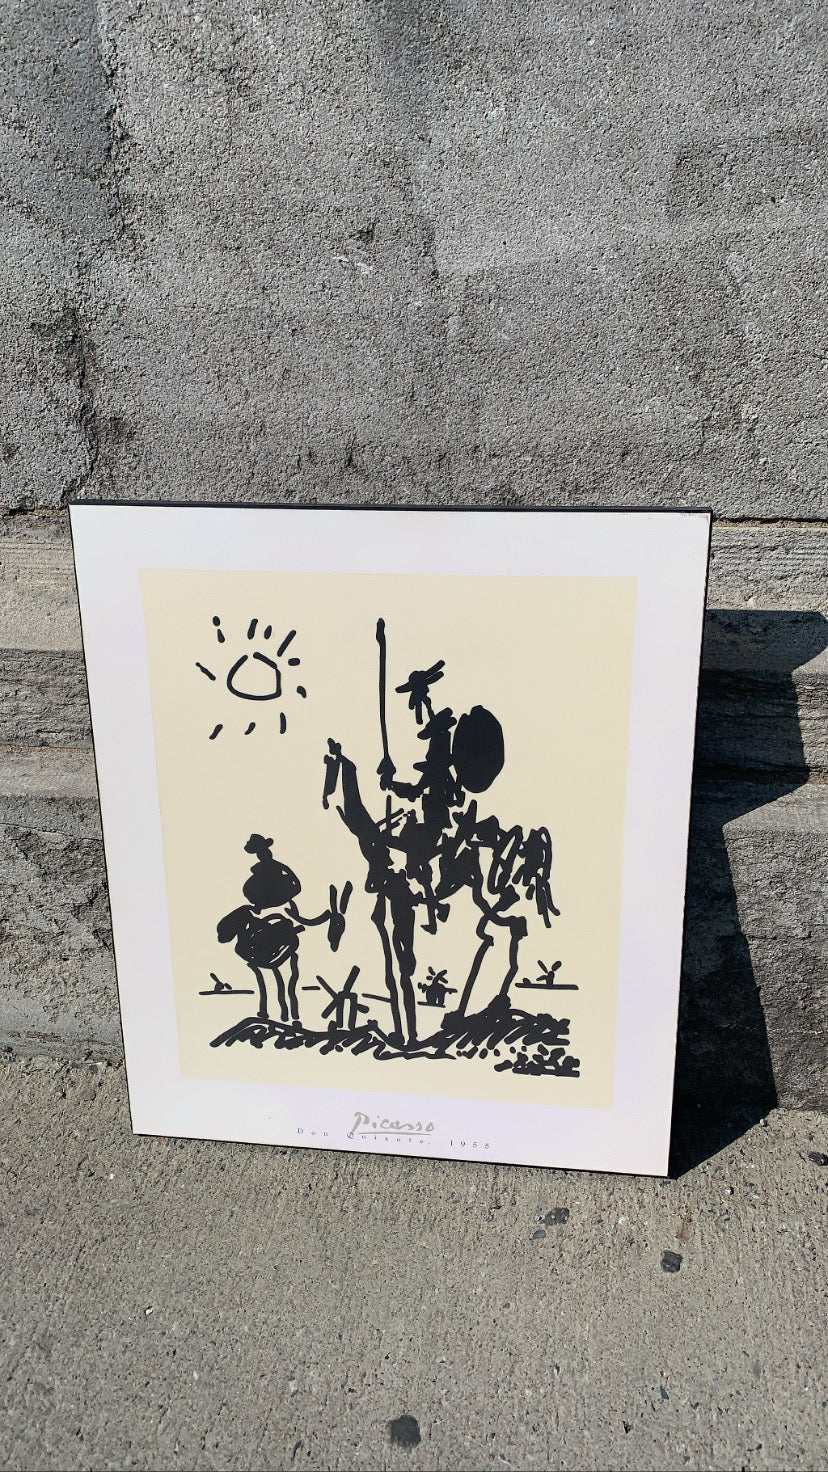 Picasso’s “ Don Quixote” Laminated print